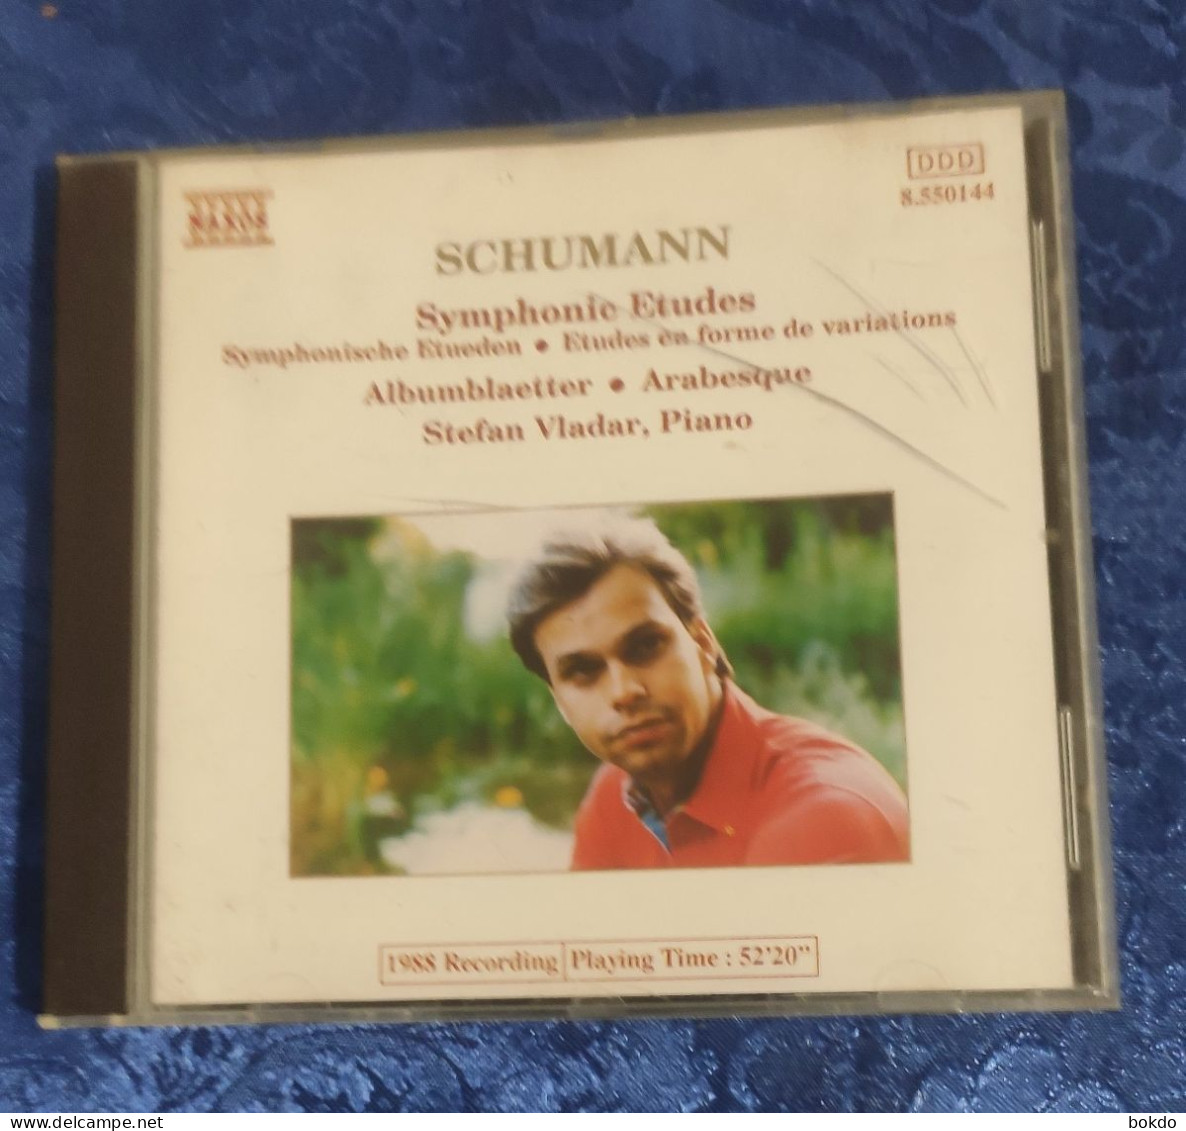 Schumann - Symphonie Etudes - Classical